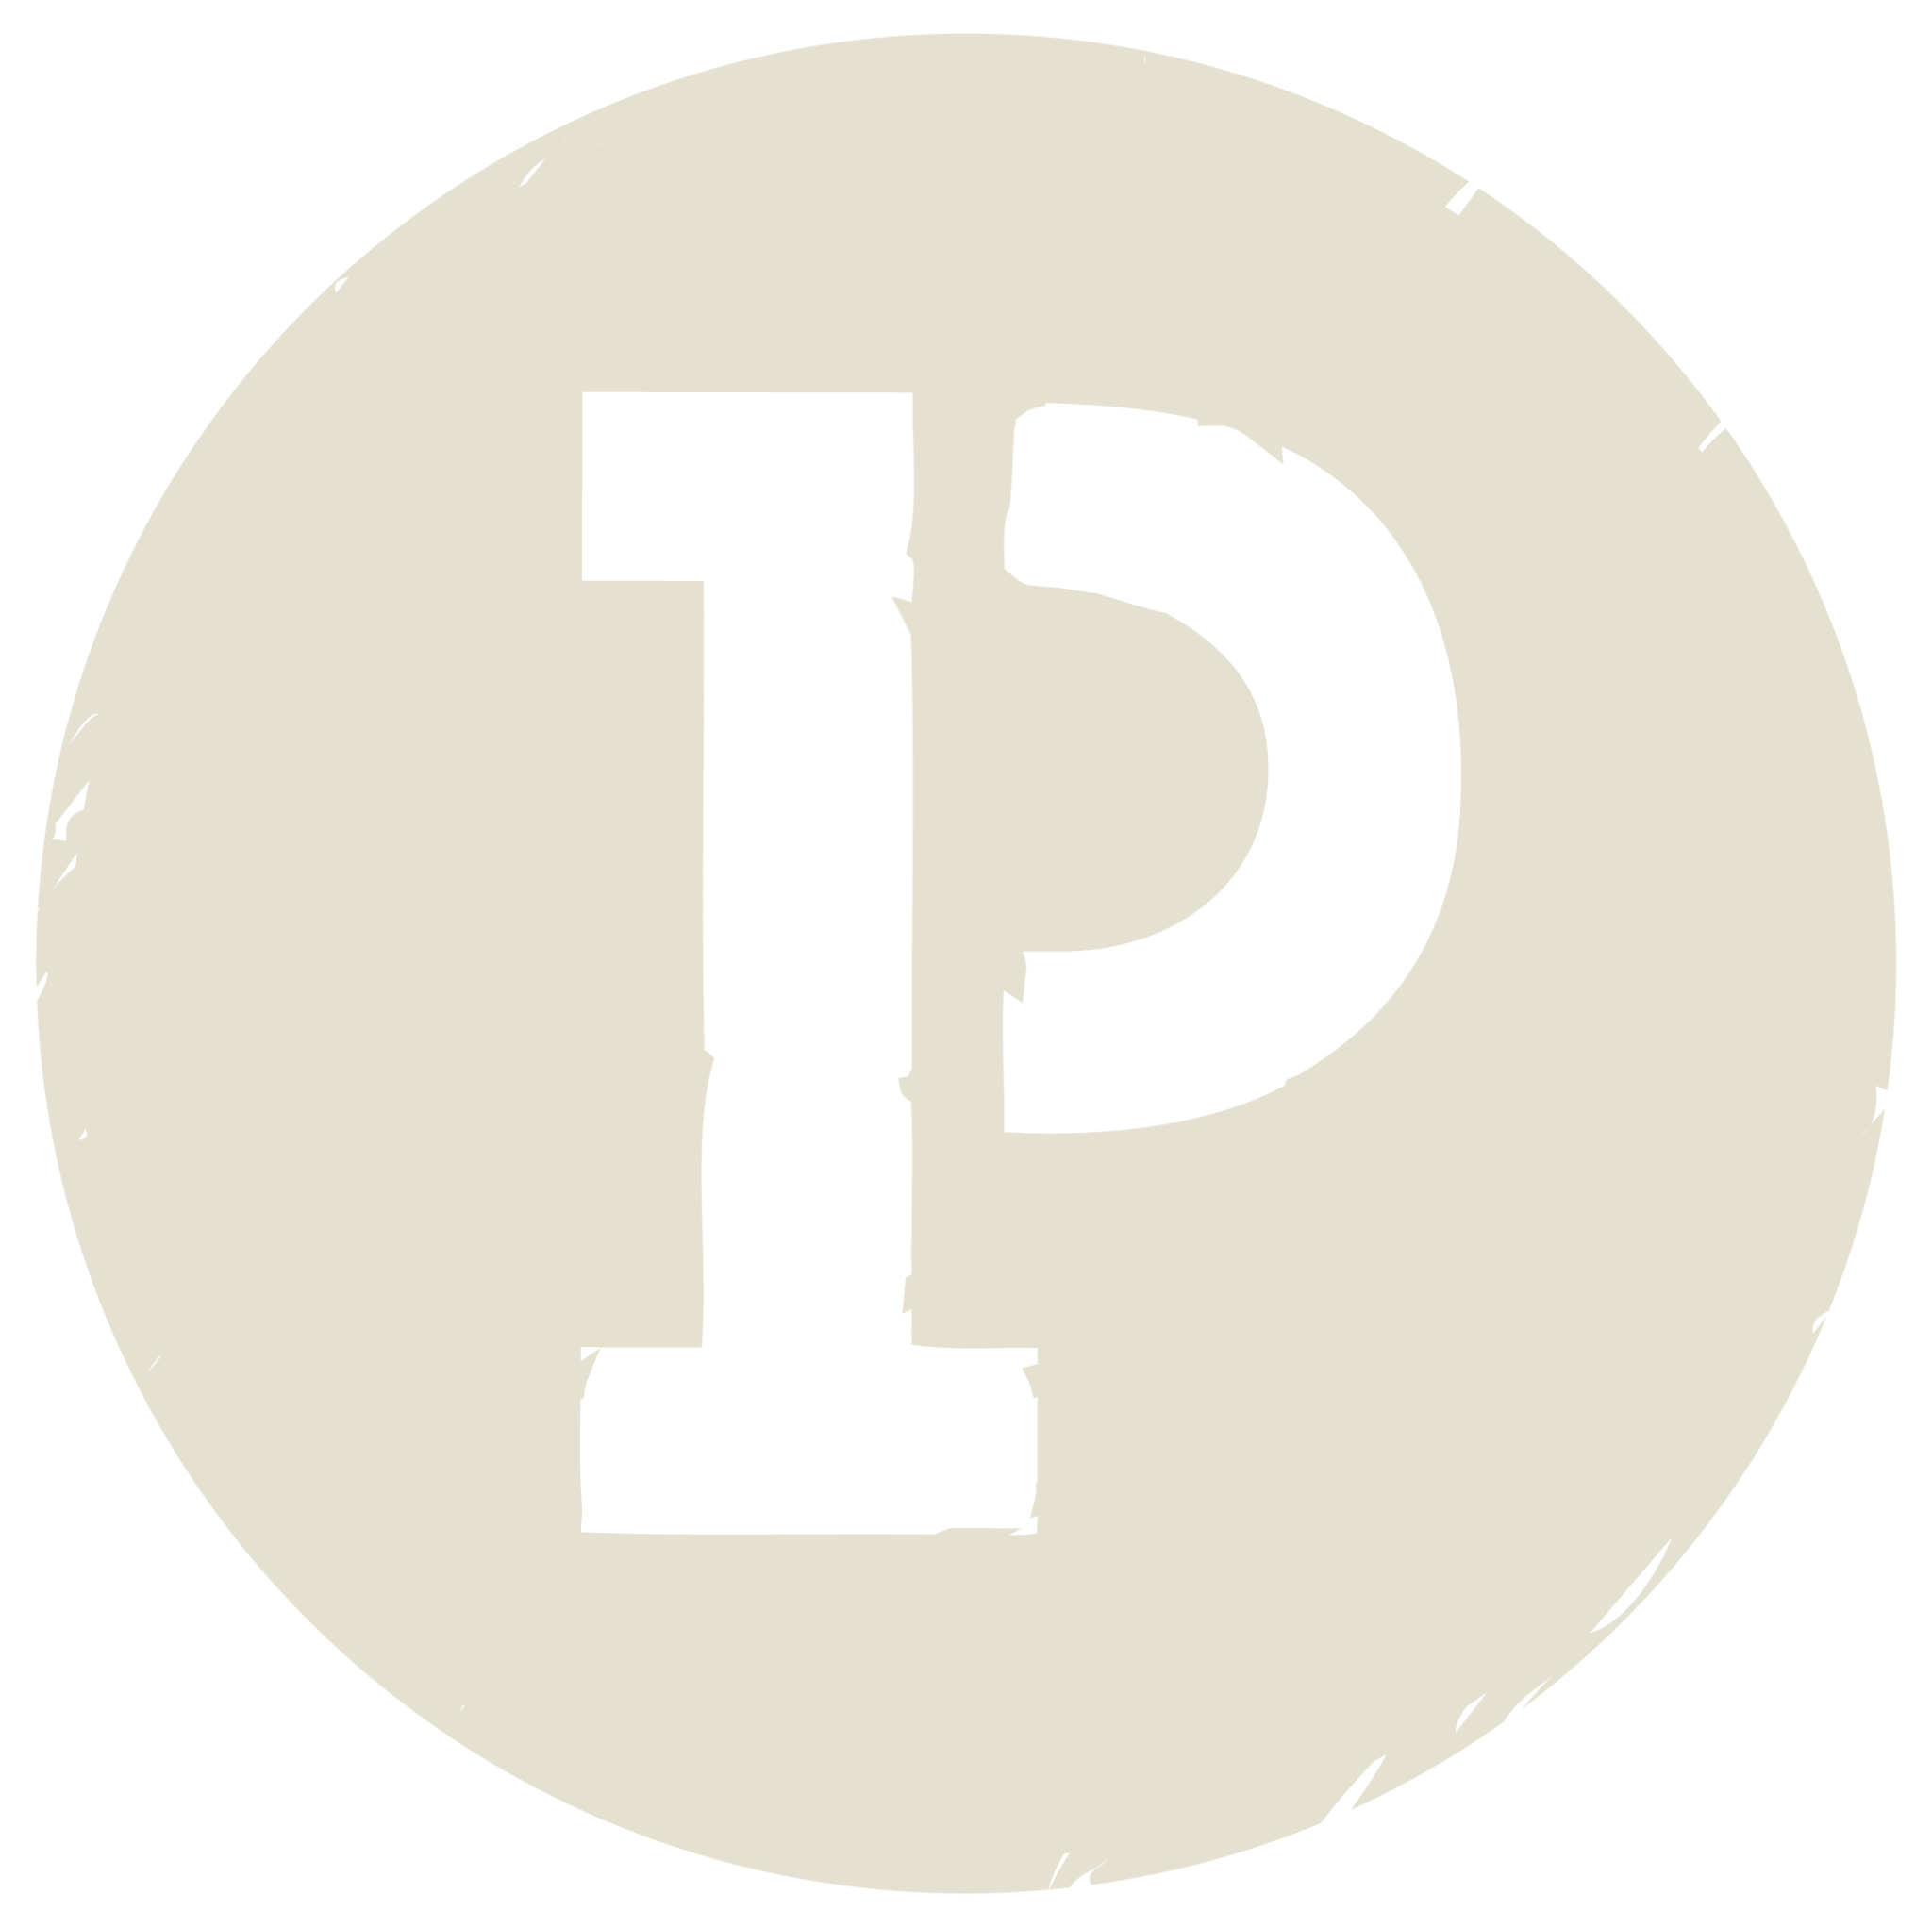 Poppo's "P" Icon